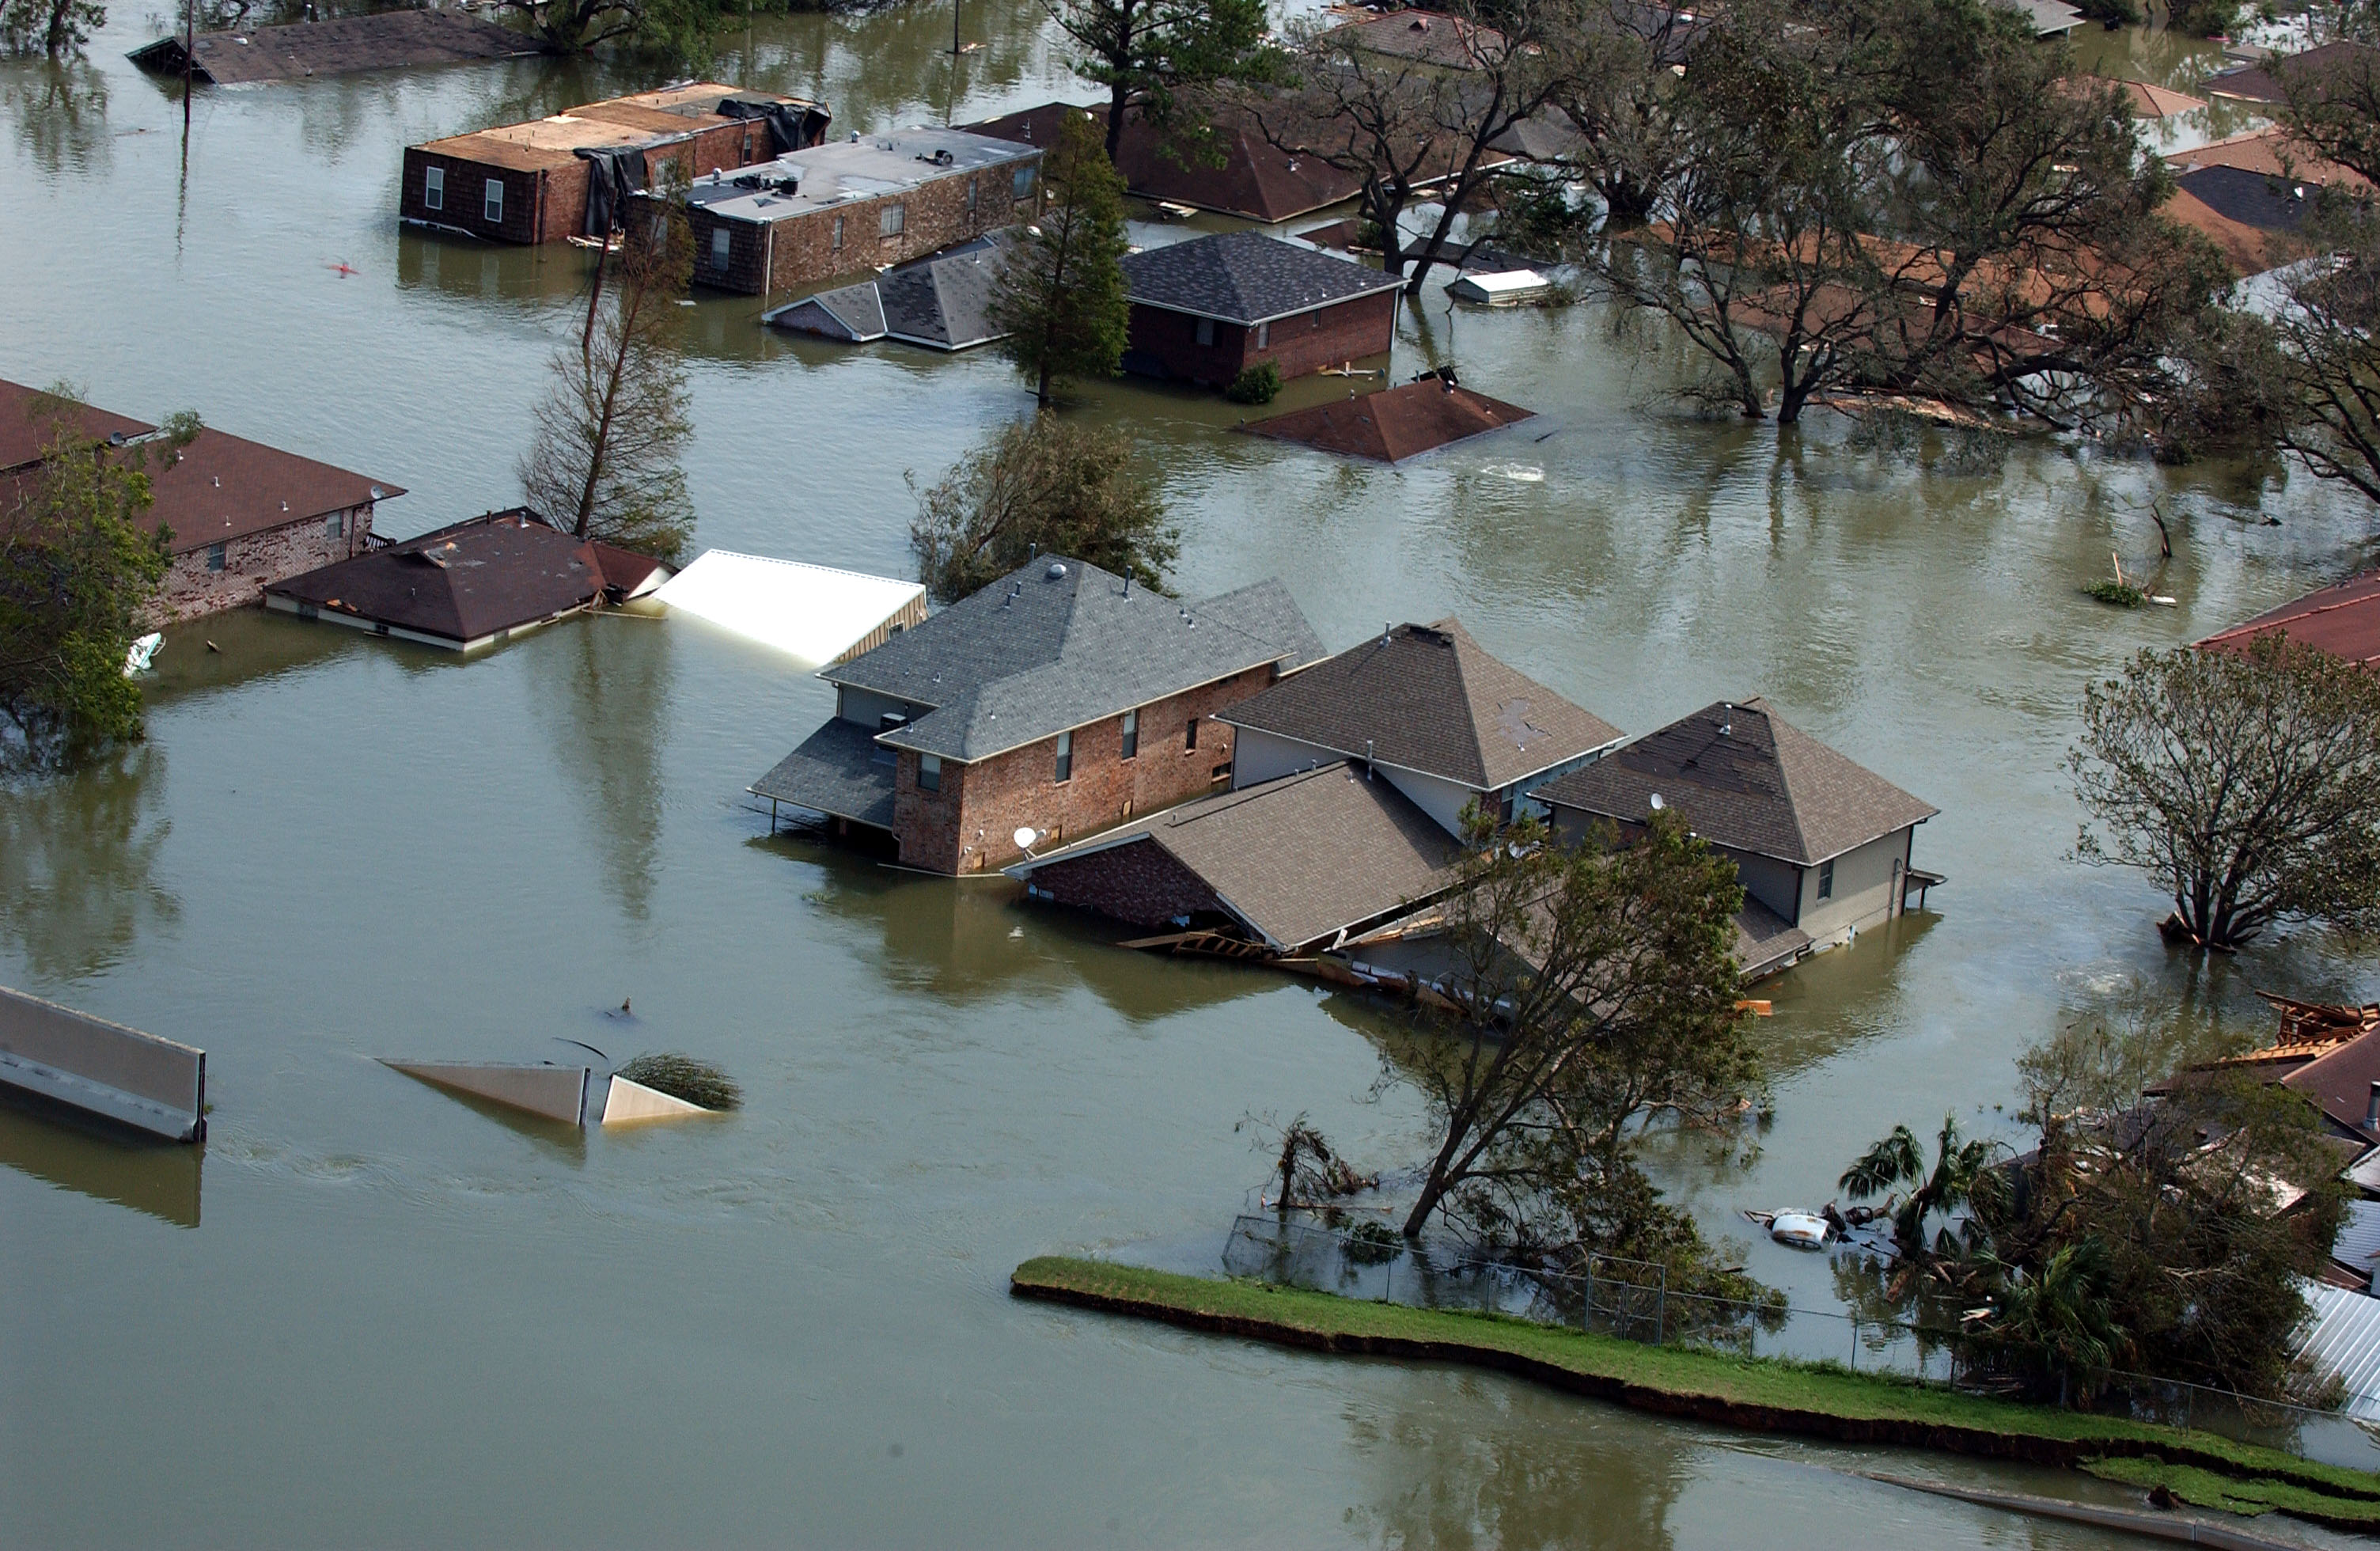 FEMA - 14976 - Photograph by Jocelyn Augustino taken on 08-30-2005 in Louisiana